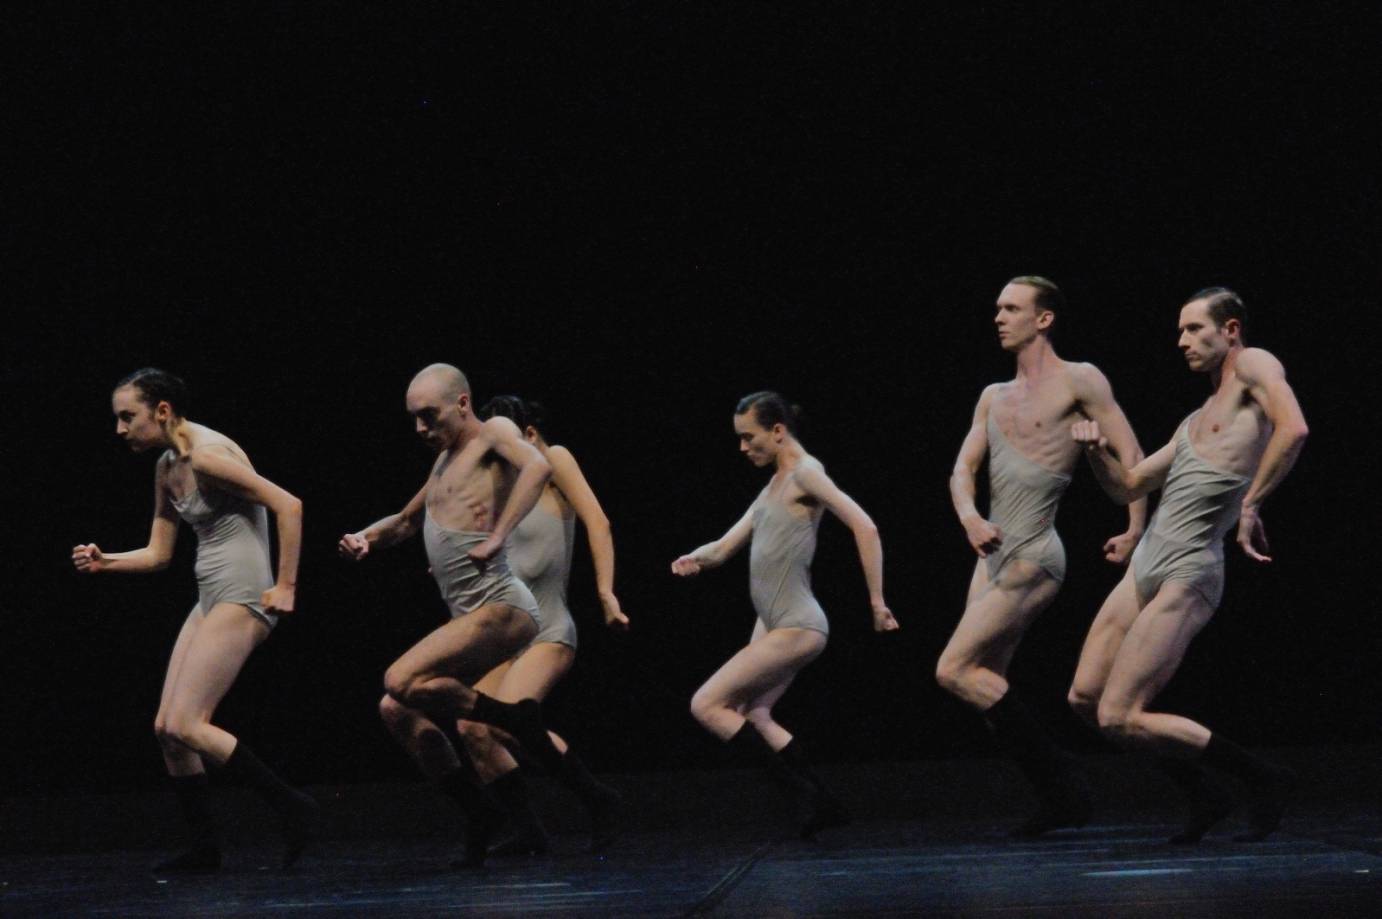 Six dancers jump in profile